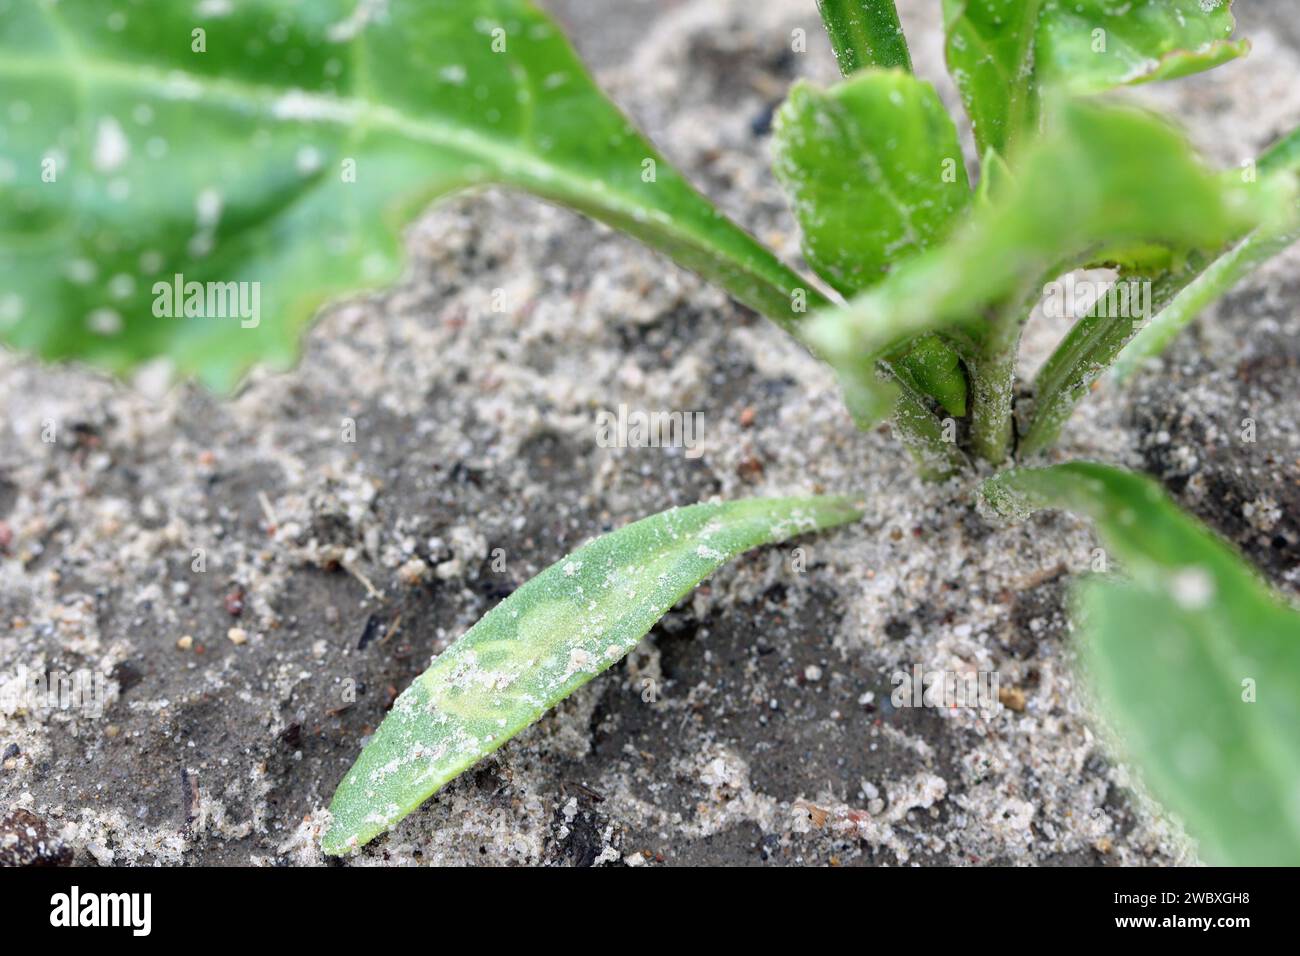 Cotyledon der Zuckerrübenpflanze mit Larventunneln von Larven fliegen aus der Familie Agromyzidae, Laub-Miner-Fliegen. Stockfoto